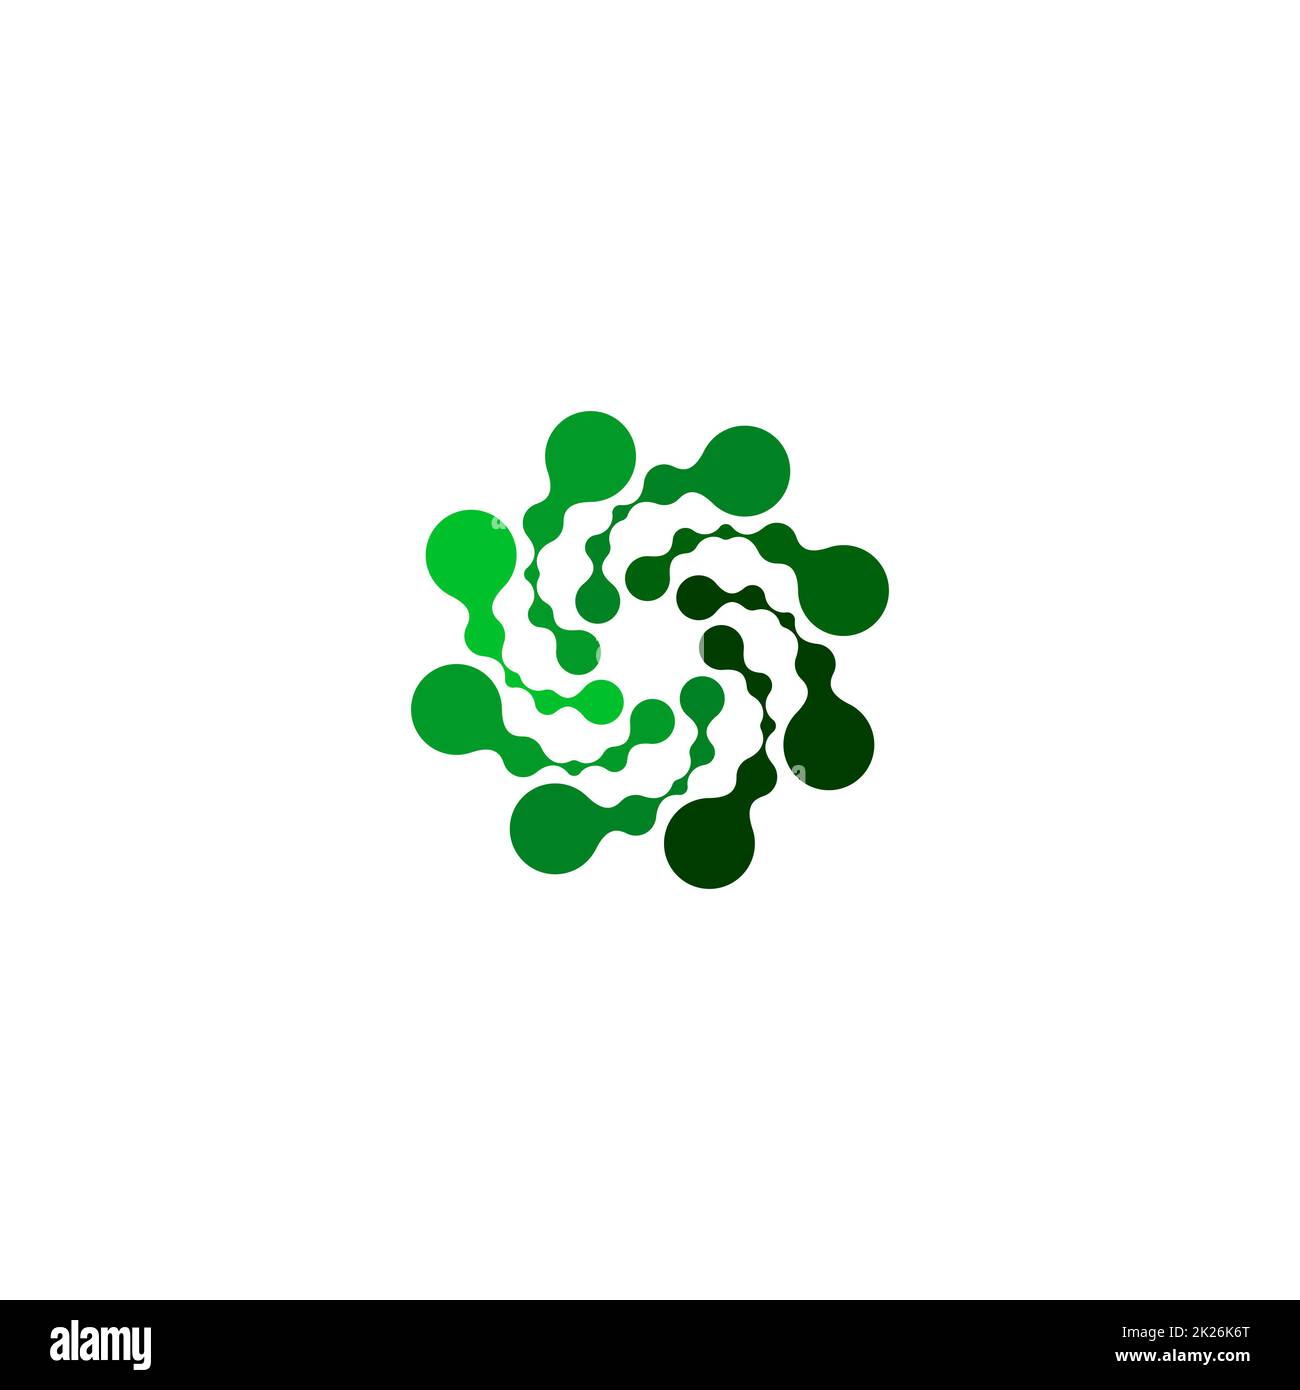 Isoliertes abstraktes grünes, rundes Logo auf weißem Hintergrund, einfache, gepunktete, geschwungene Vektordarstellung des Logos Stockfoto